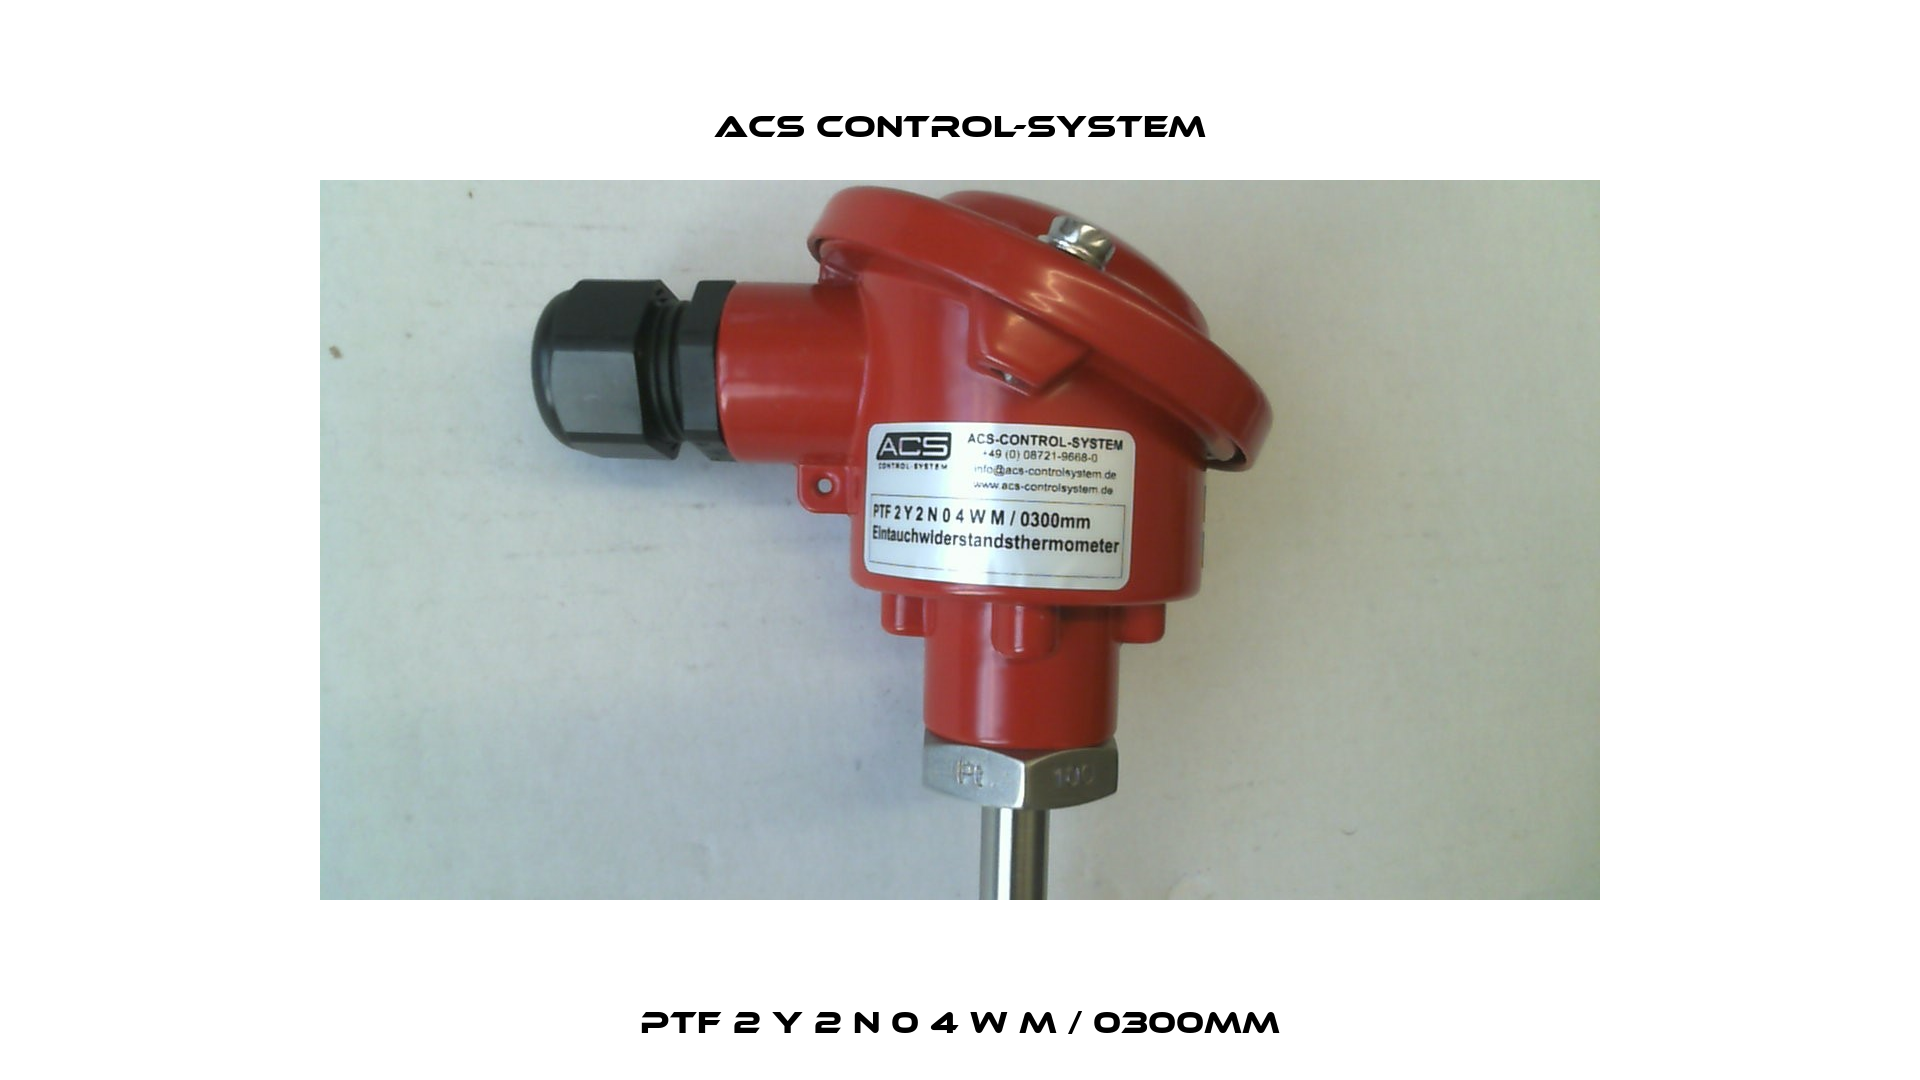 PTF 2 Y 2 N 0 4 W M / 0300mm Acs Control-System